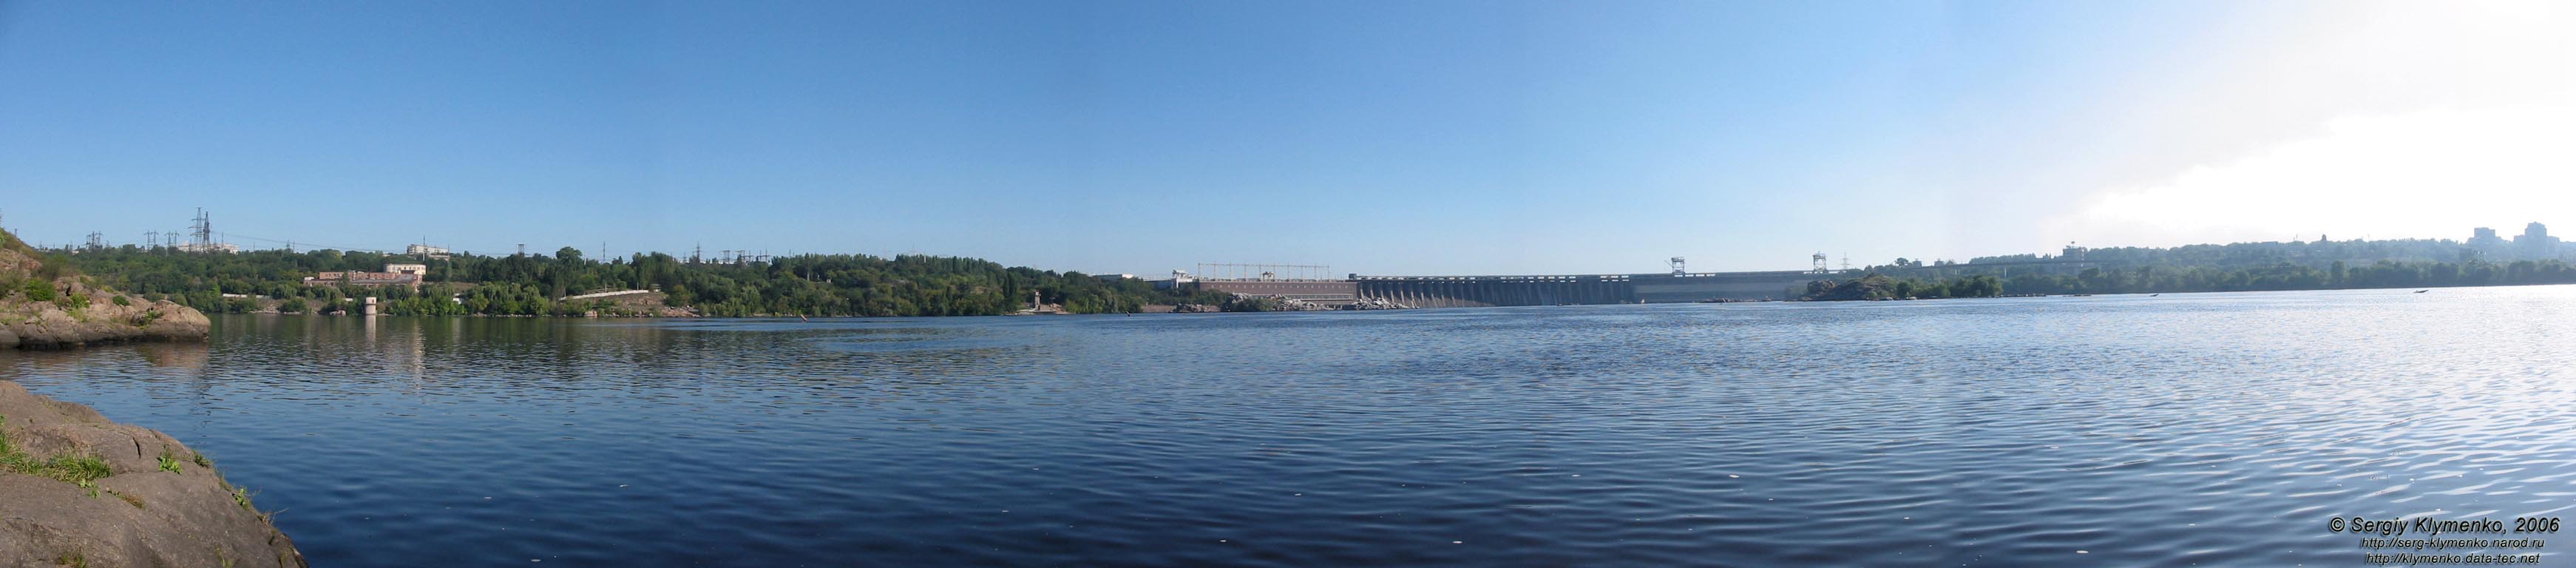 Днепровские пороги на фоне плотины ДнепроГЭС, вид с Хортицы